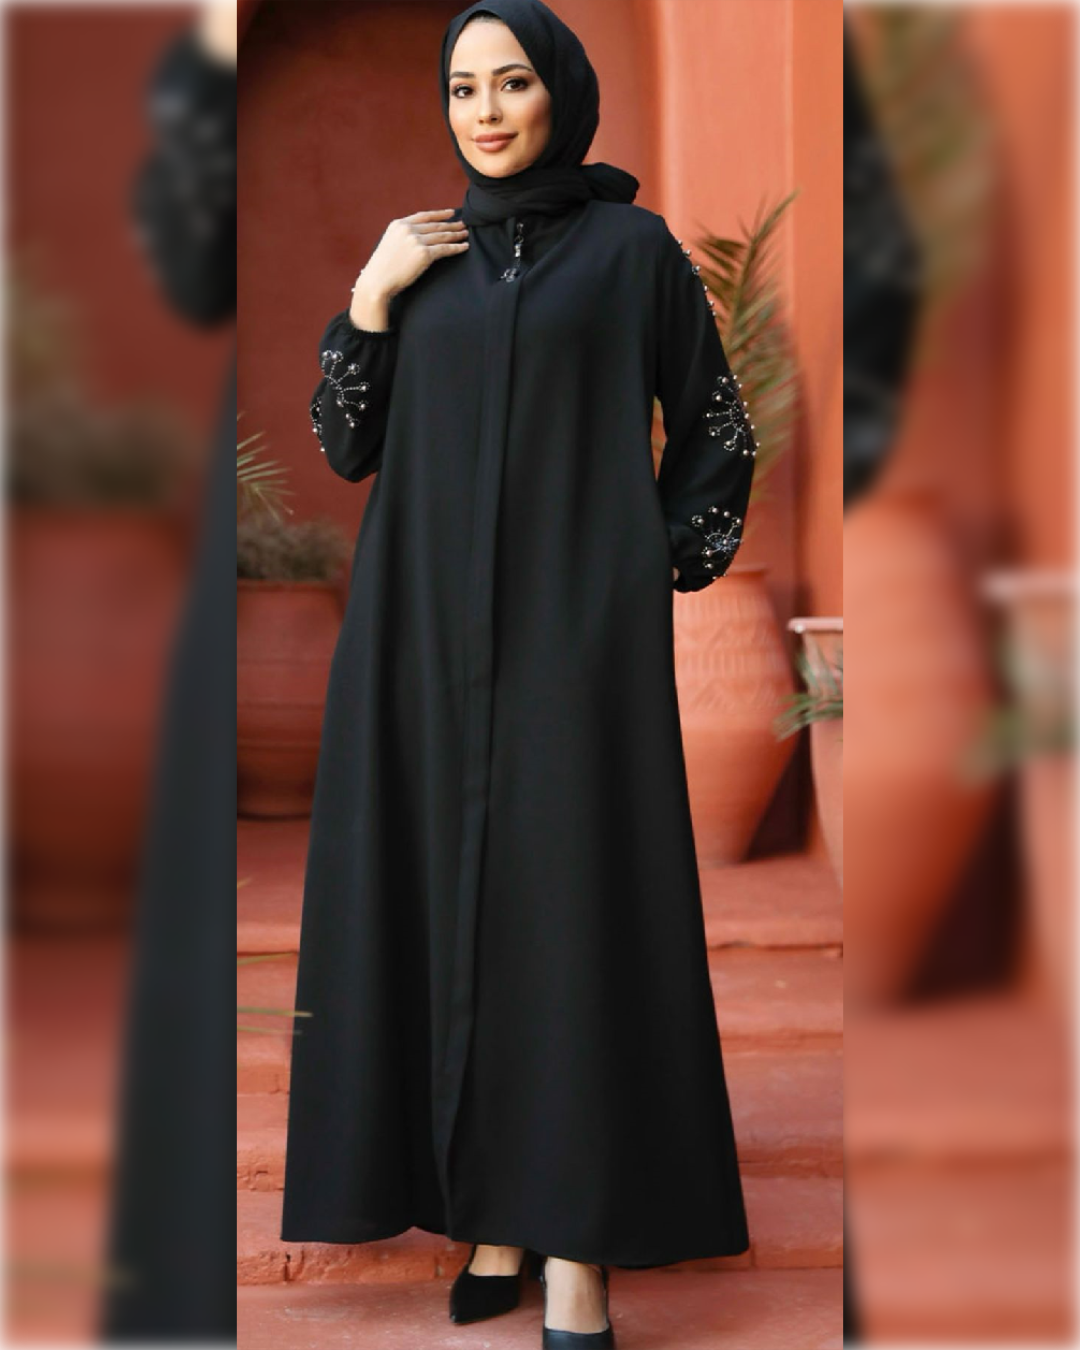 Fatimah Beaded Abaya Dress for Summer in Black Shade   عباءة فاطمة الصيفية المزينة بالخرز  باللون الأسود الجميل